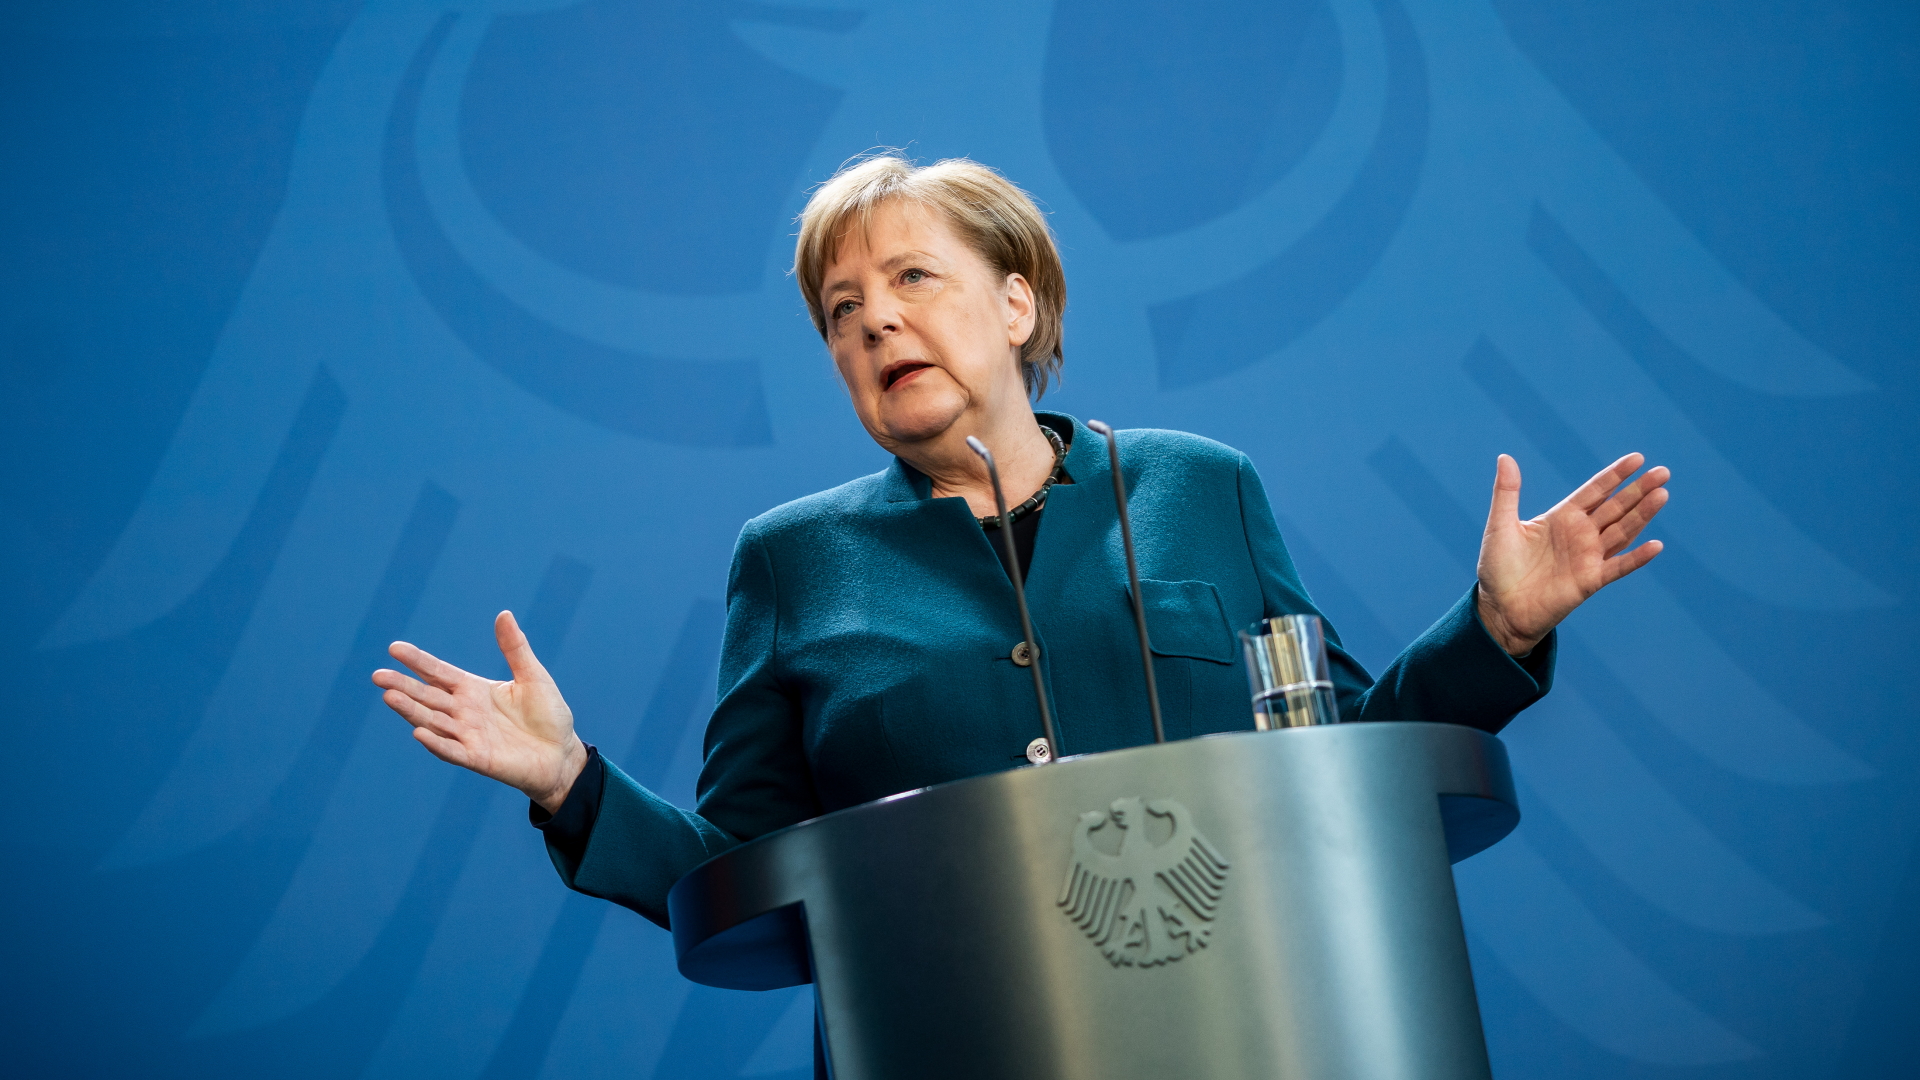 Bundeskanzlerin Angela Merkel spricht auf einer Pressekonferenz in Berlin | Bildquelle: dpa